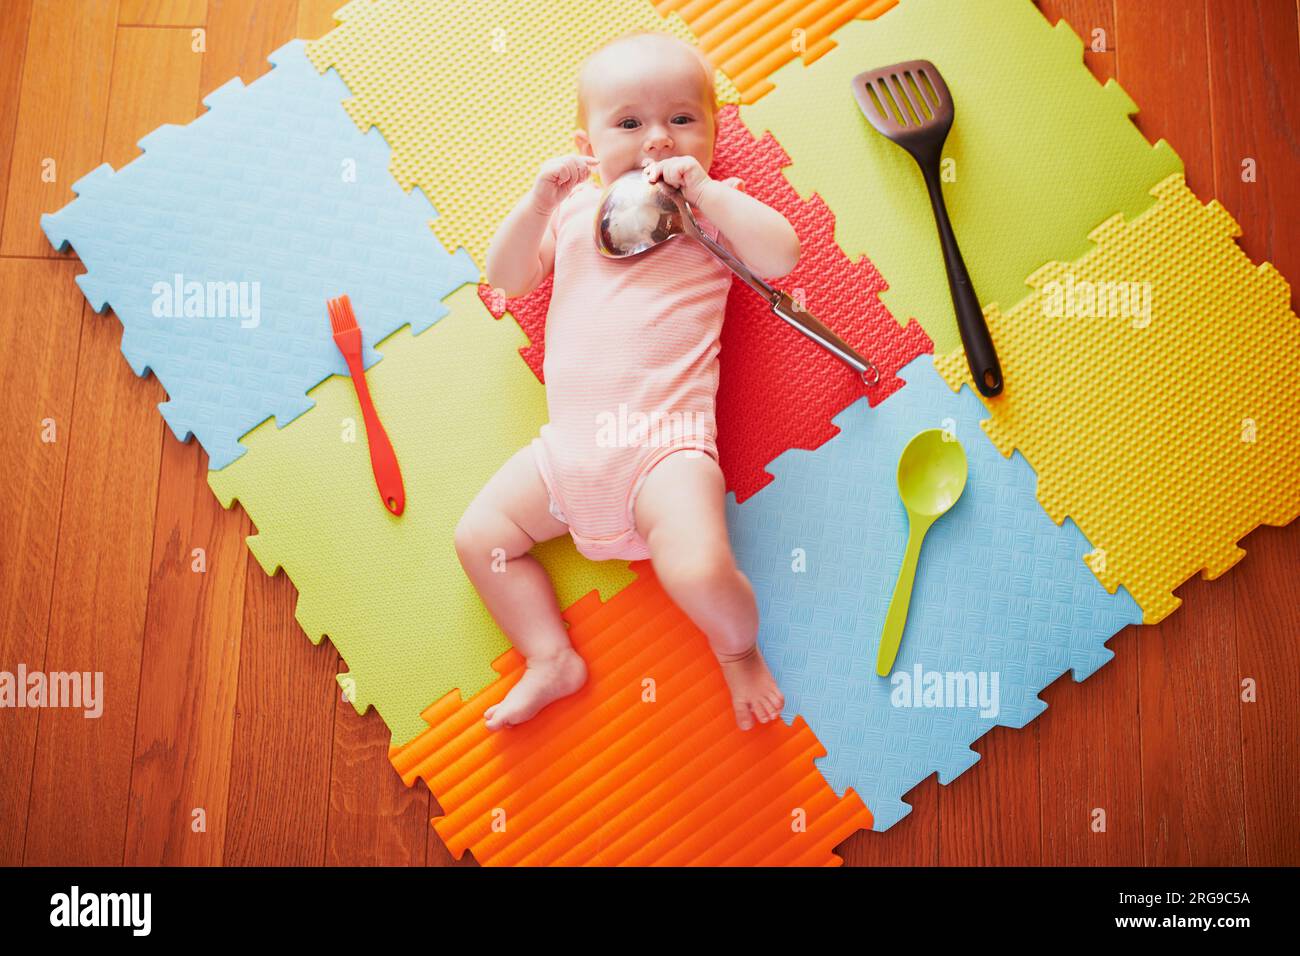 Bébé fille avec ustensiles de cuisine. Petit enfant allongé tapis de jeu et jouant avec les ustensiles de cuisine. De vraies choses comme des jouets pour les enfants. Enfant en bas âge dans nurser ensoleillé Banque D'Images